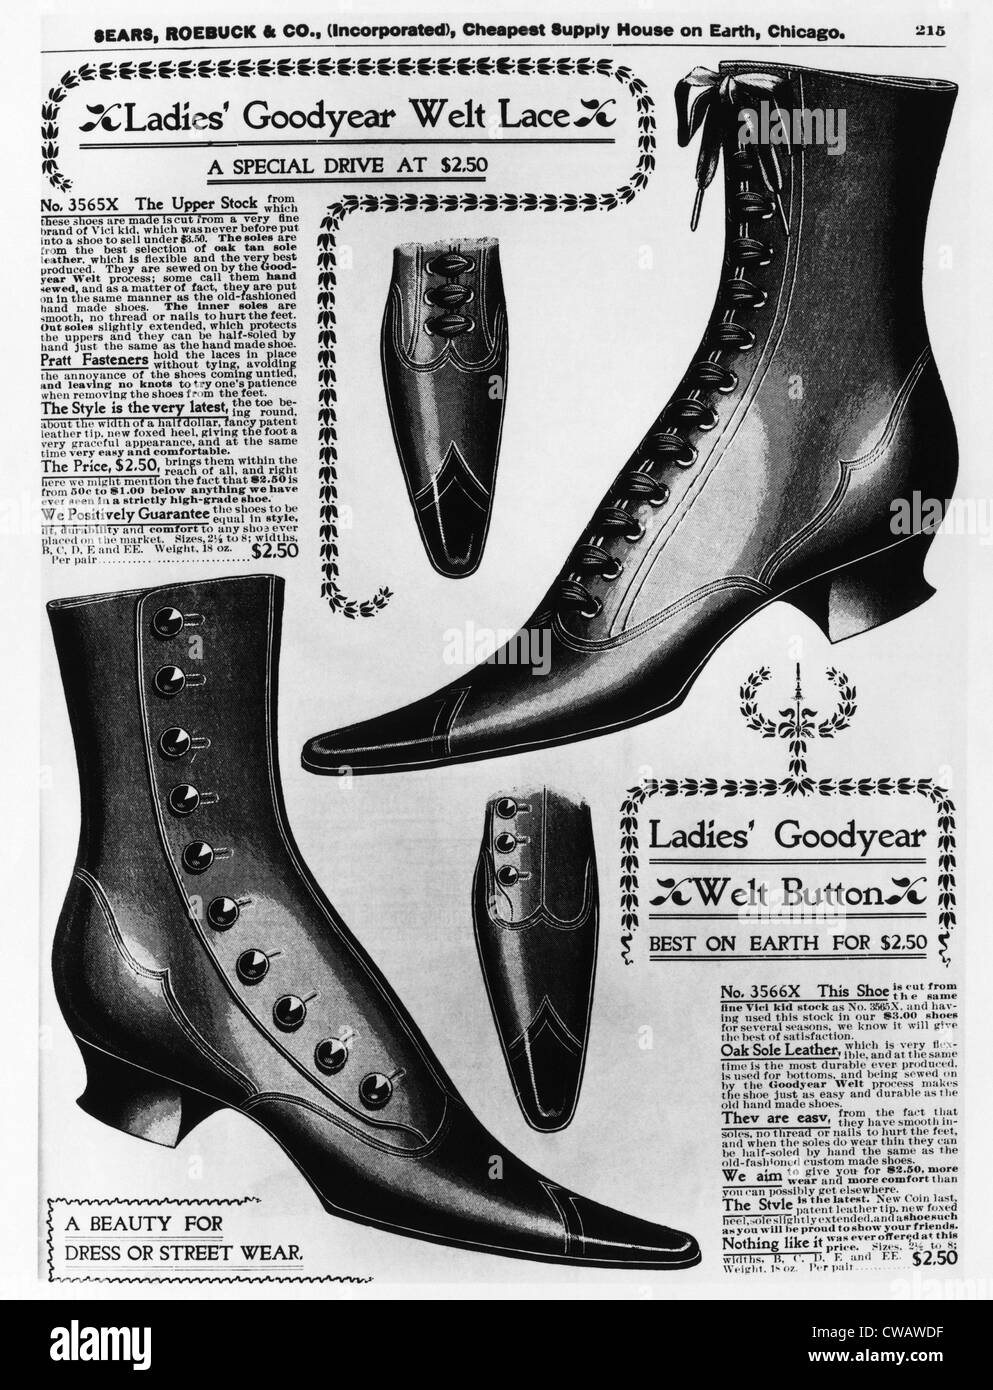 Victorian boots Banque de photographies et d'images à haute résolution -  Alamy